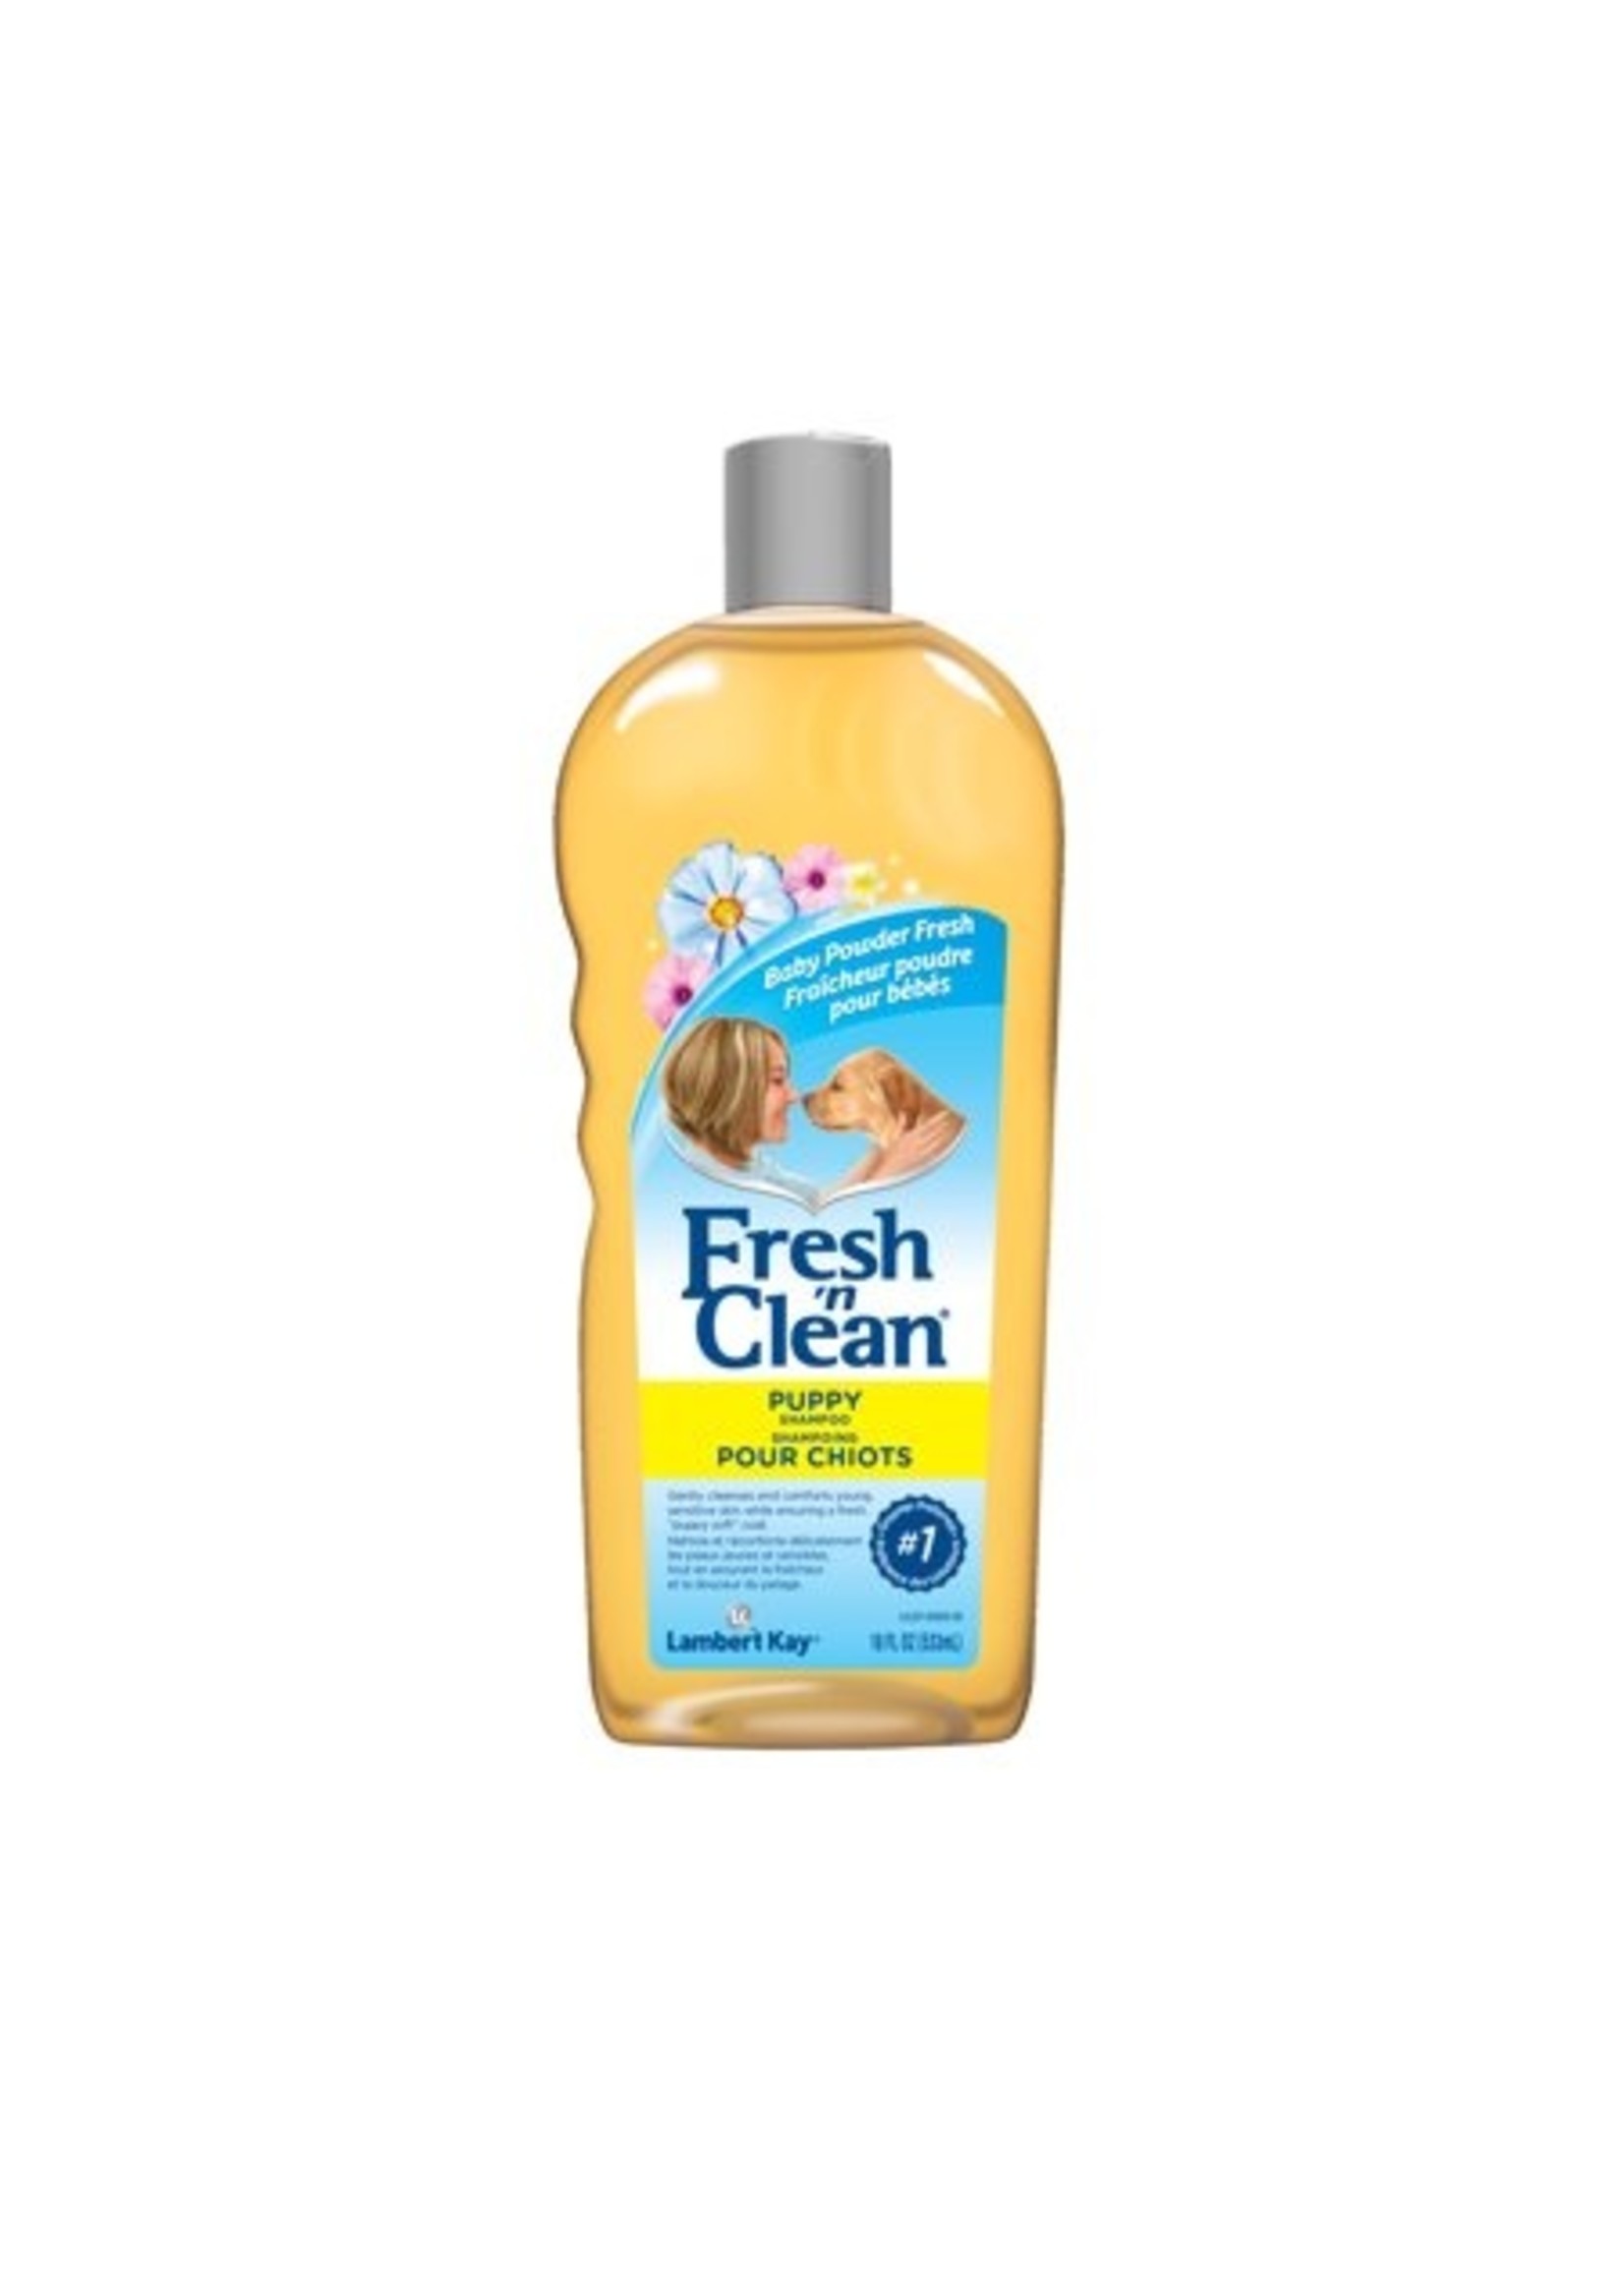 Fresh n' Clean Fresh,n Clean Baby Powder Fresh Scent Puppy Shampoo 18fl oz